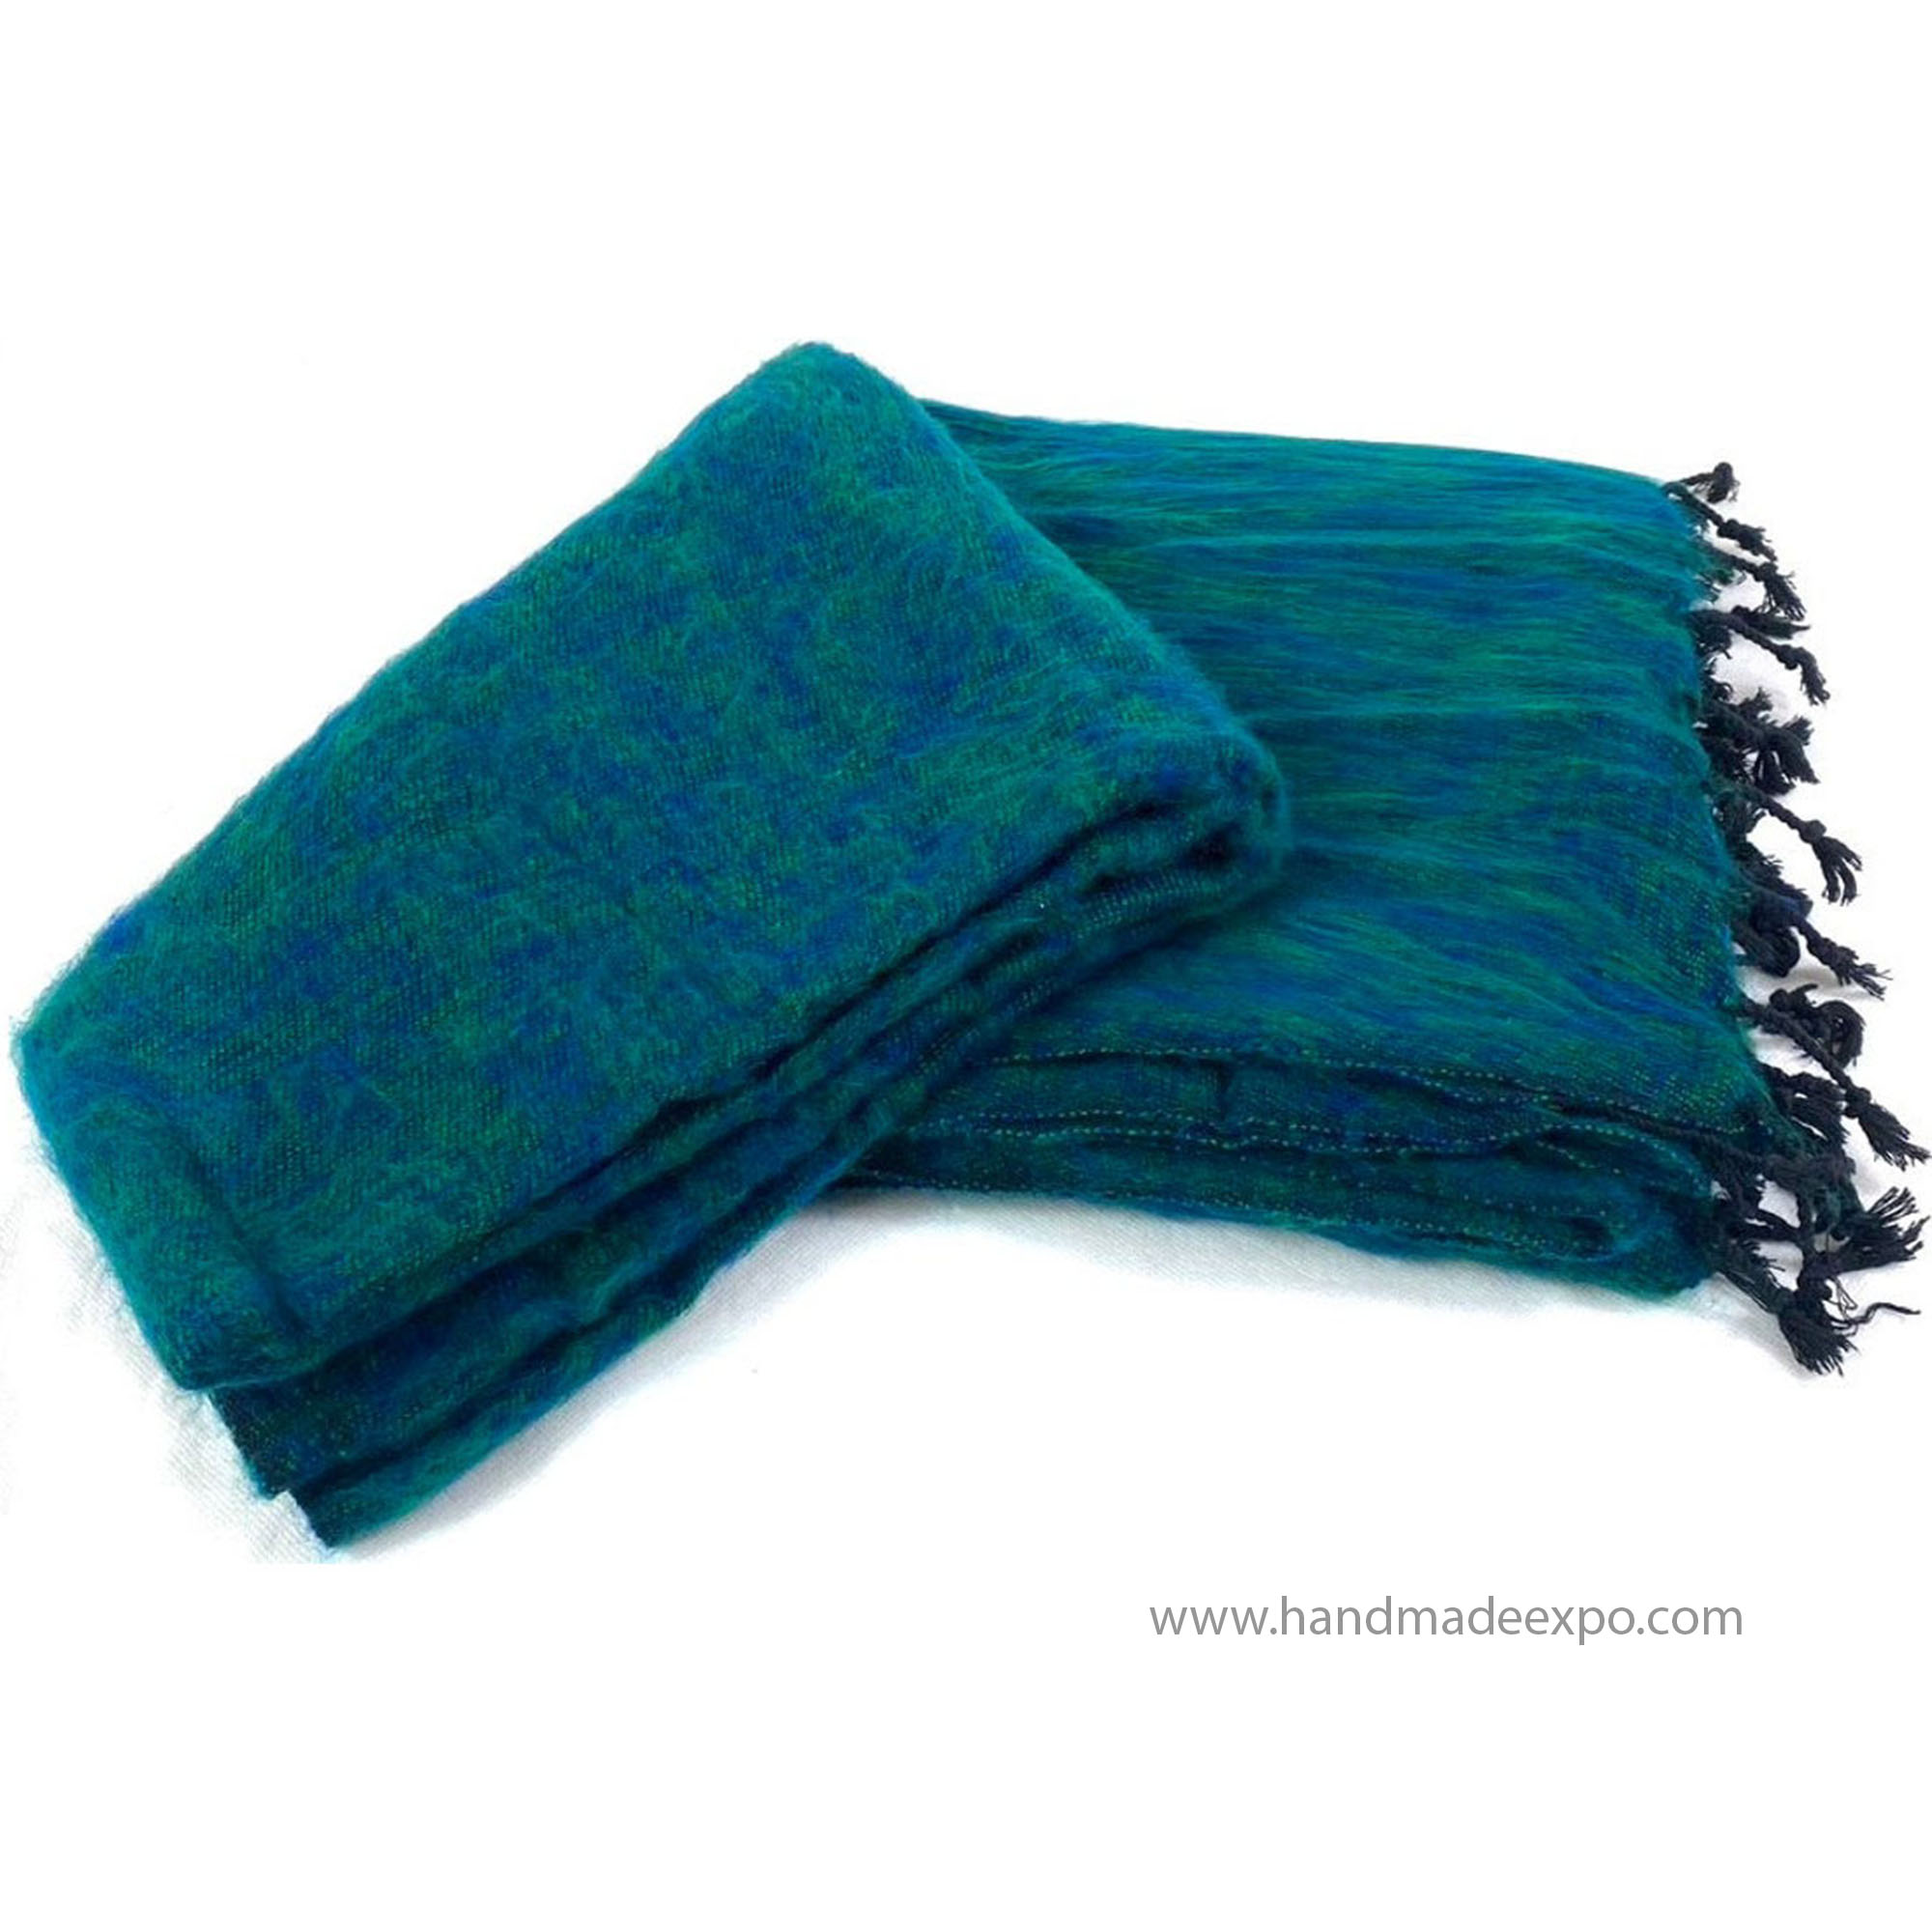 Yak Wool Blanket, Nepali Acrylic Hand Loom Blanket, tourquise